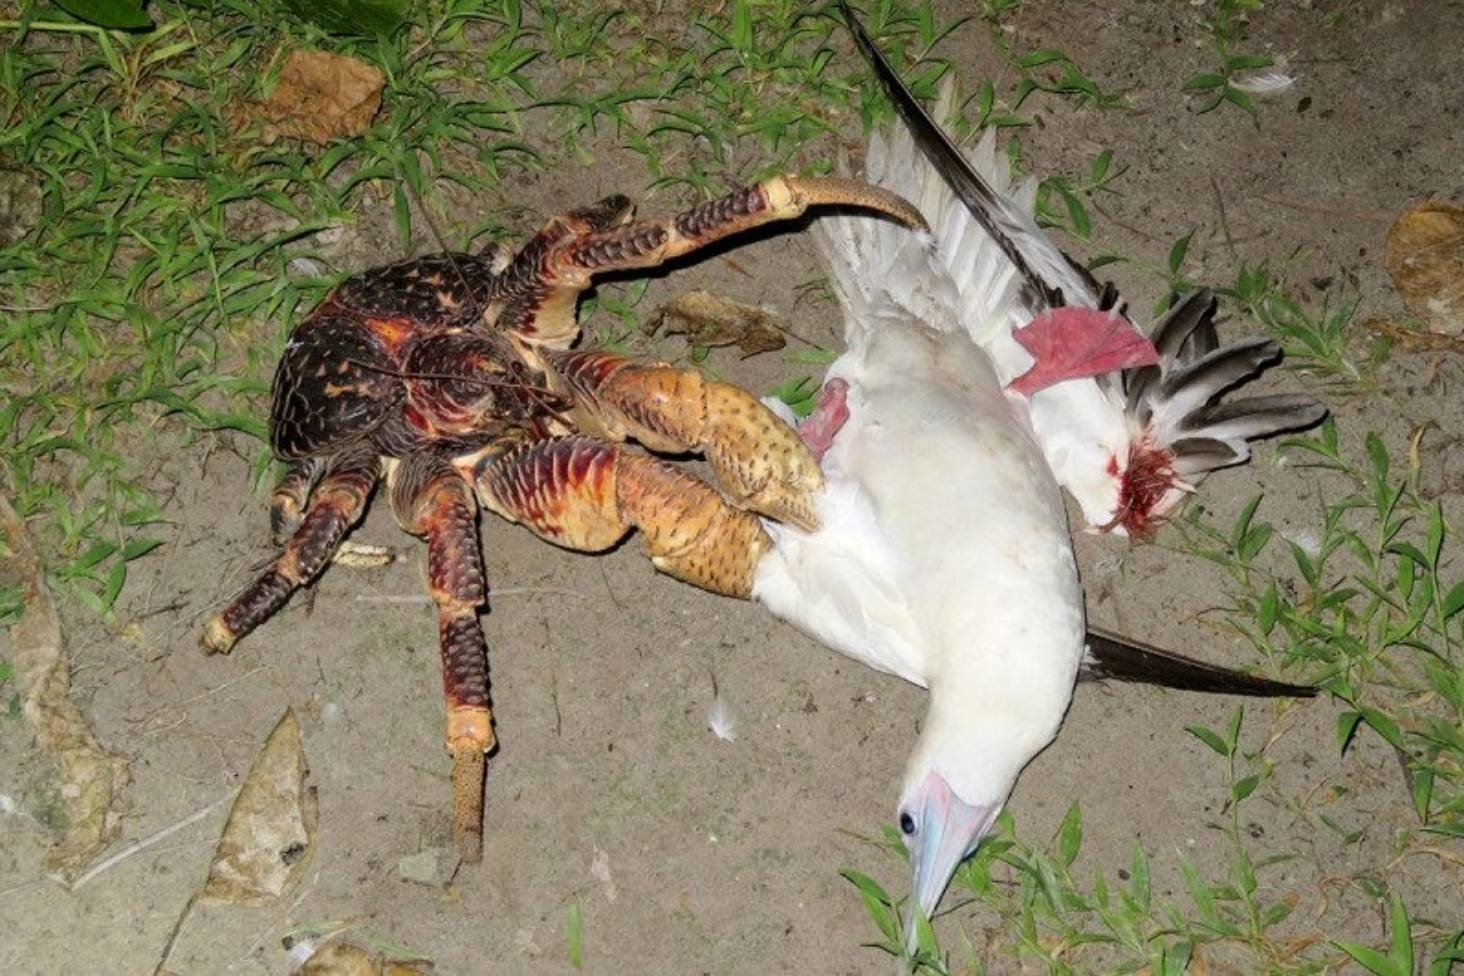 基隆嶼罕見保育類椰子蟹現蹤 生態專家呼籲勿干擾 | 生活 | 中央社 CNA